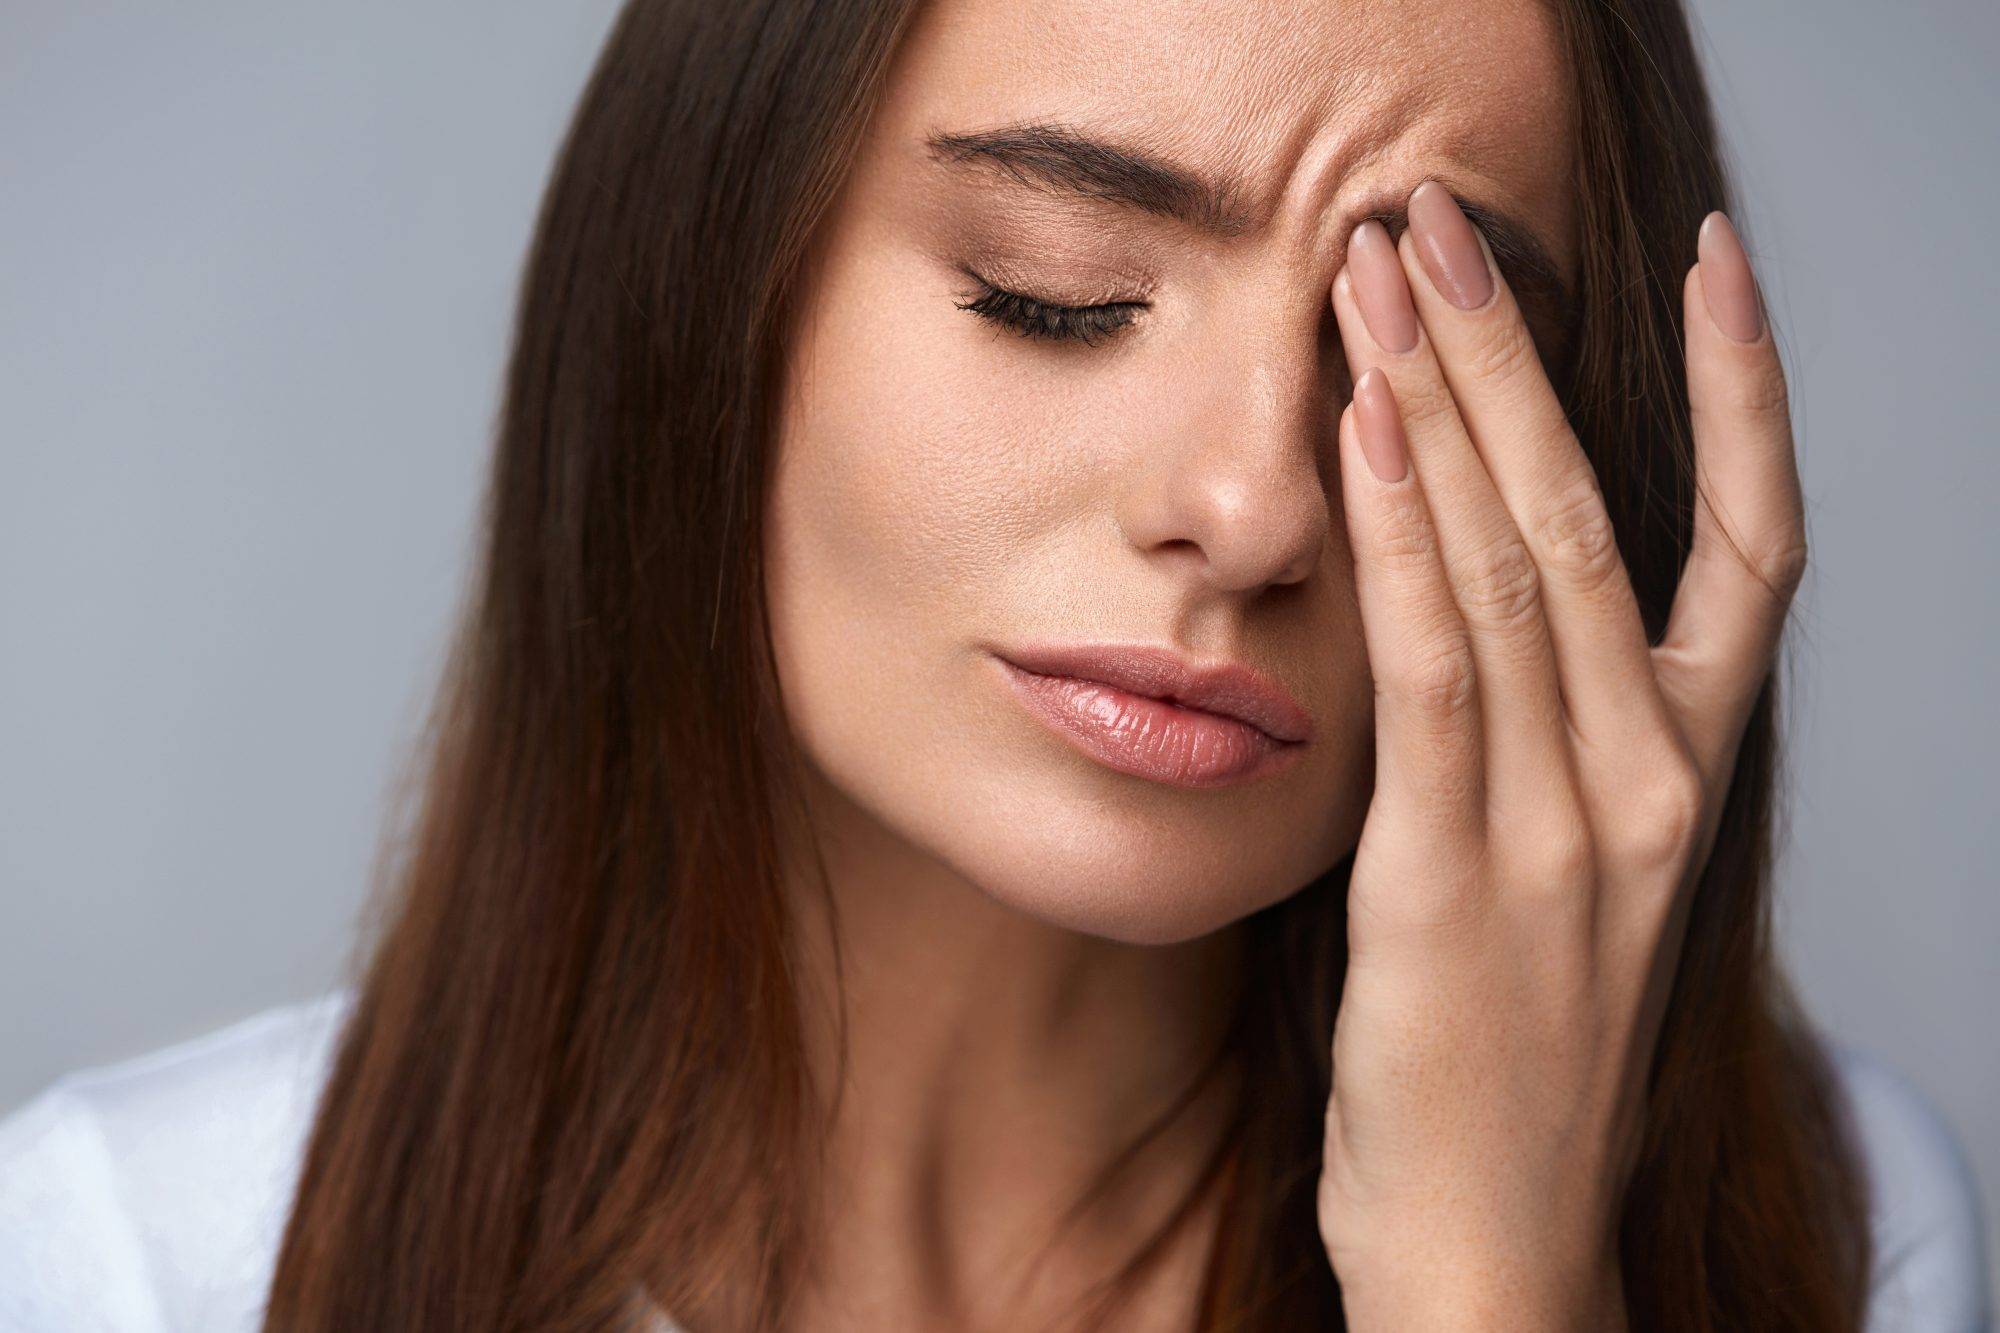 Femme présentant des symptômes de fatigue oculaire et de maux de tête essayant de se frotter les yeux, se sentant mal à l'aise